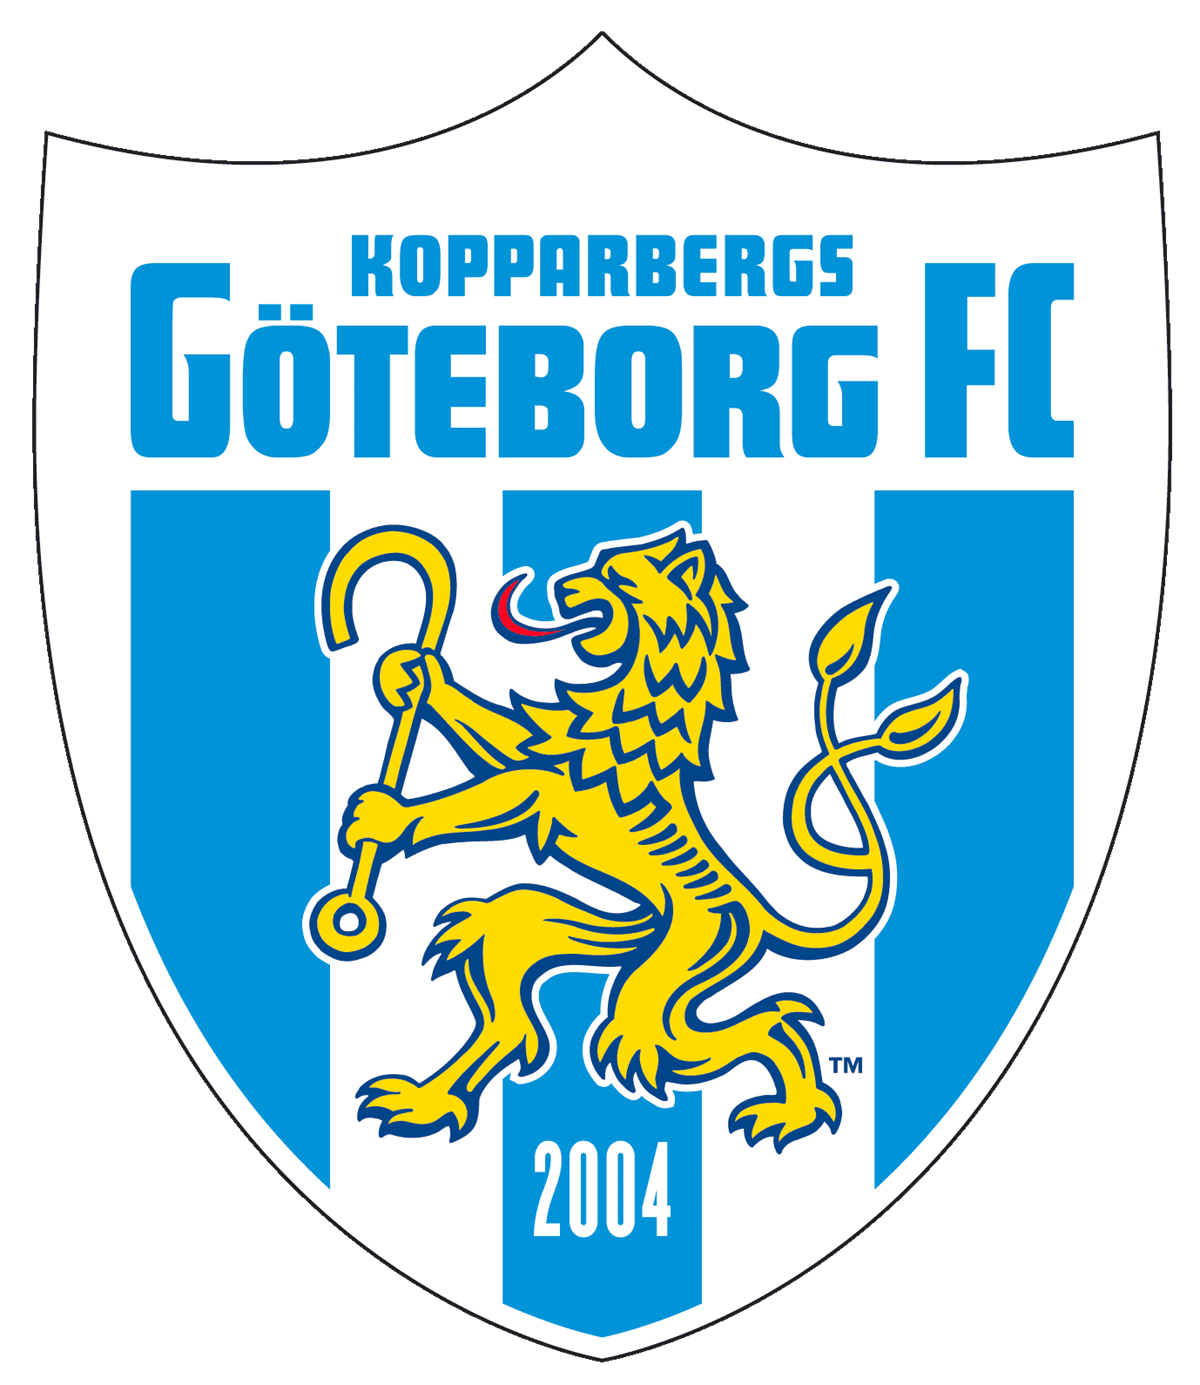 Kopparberg/Göteborg